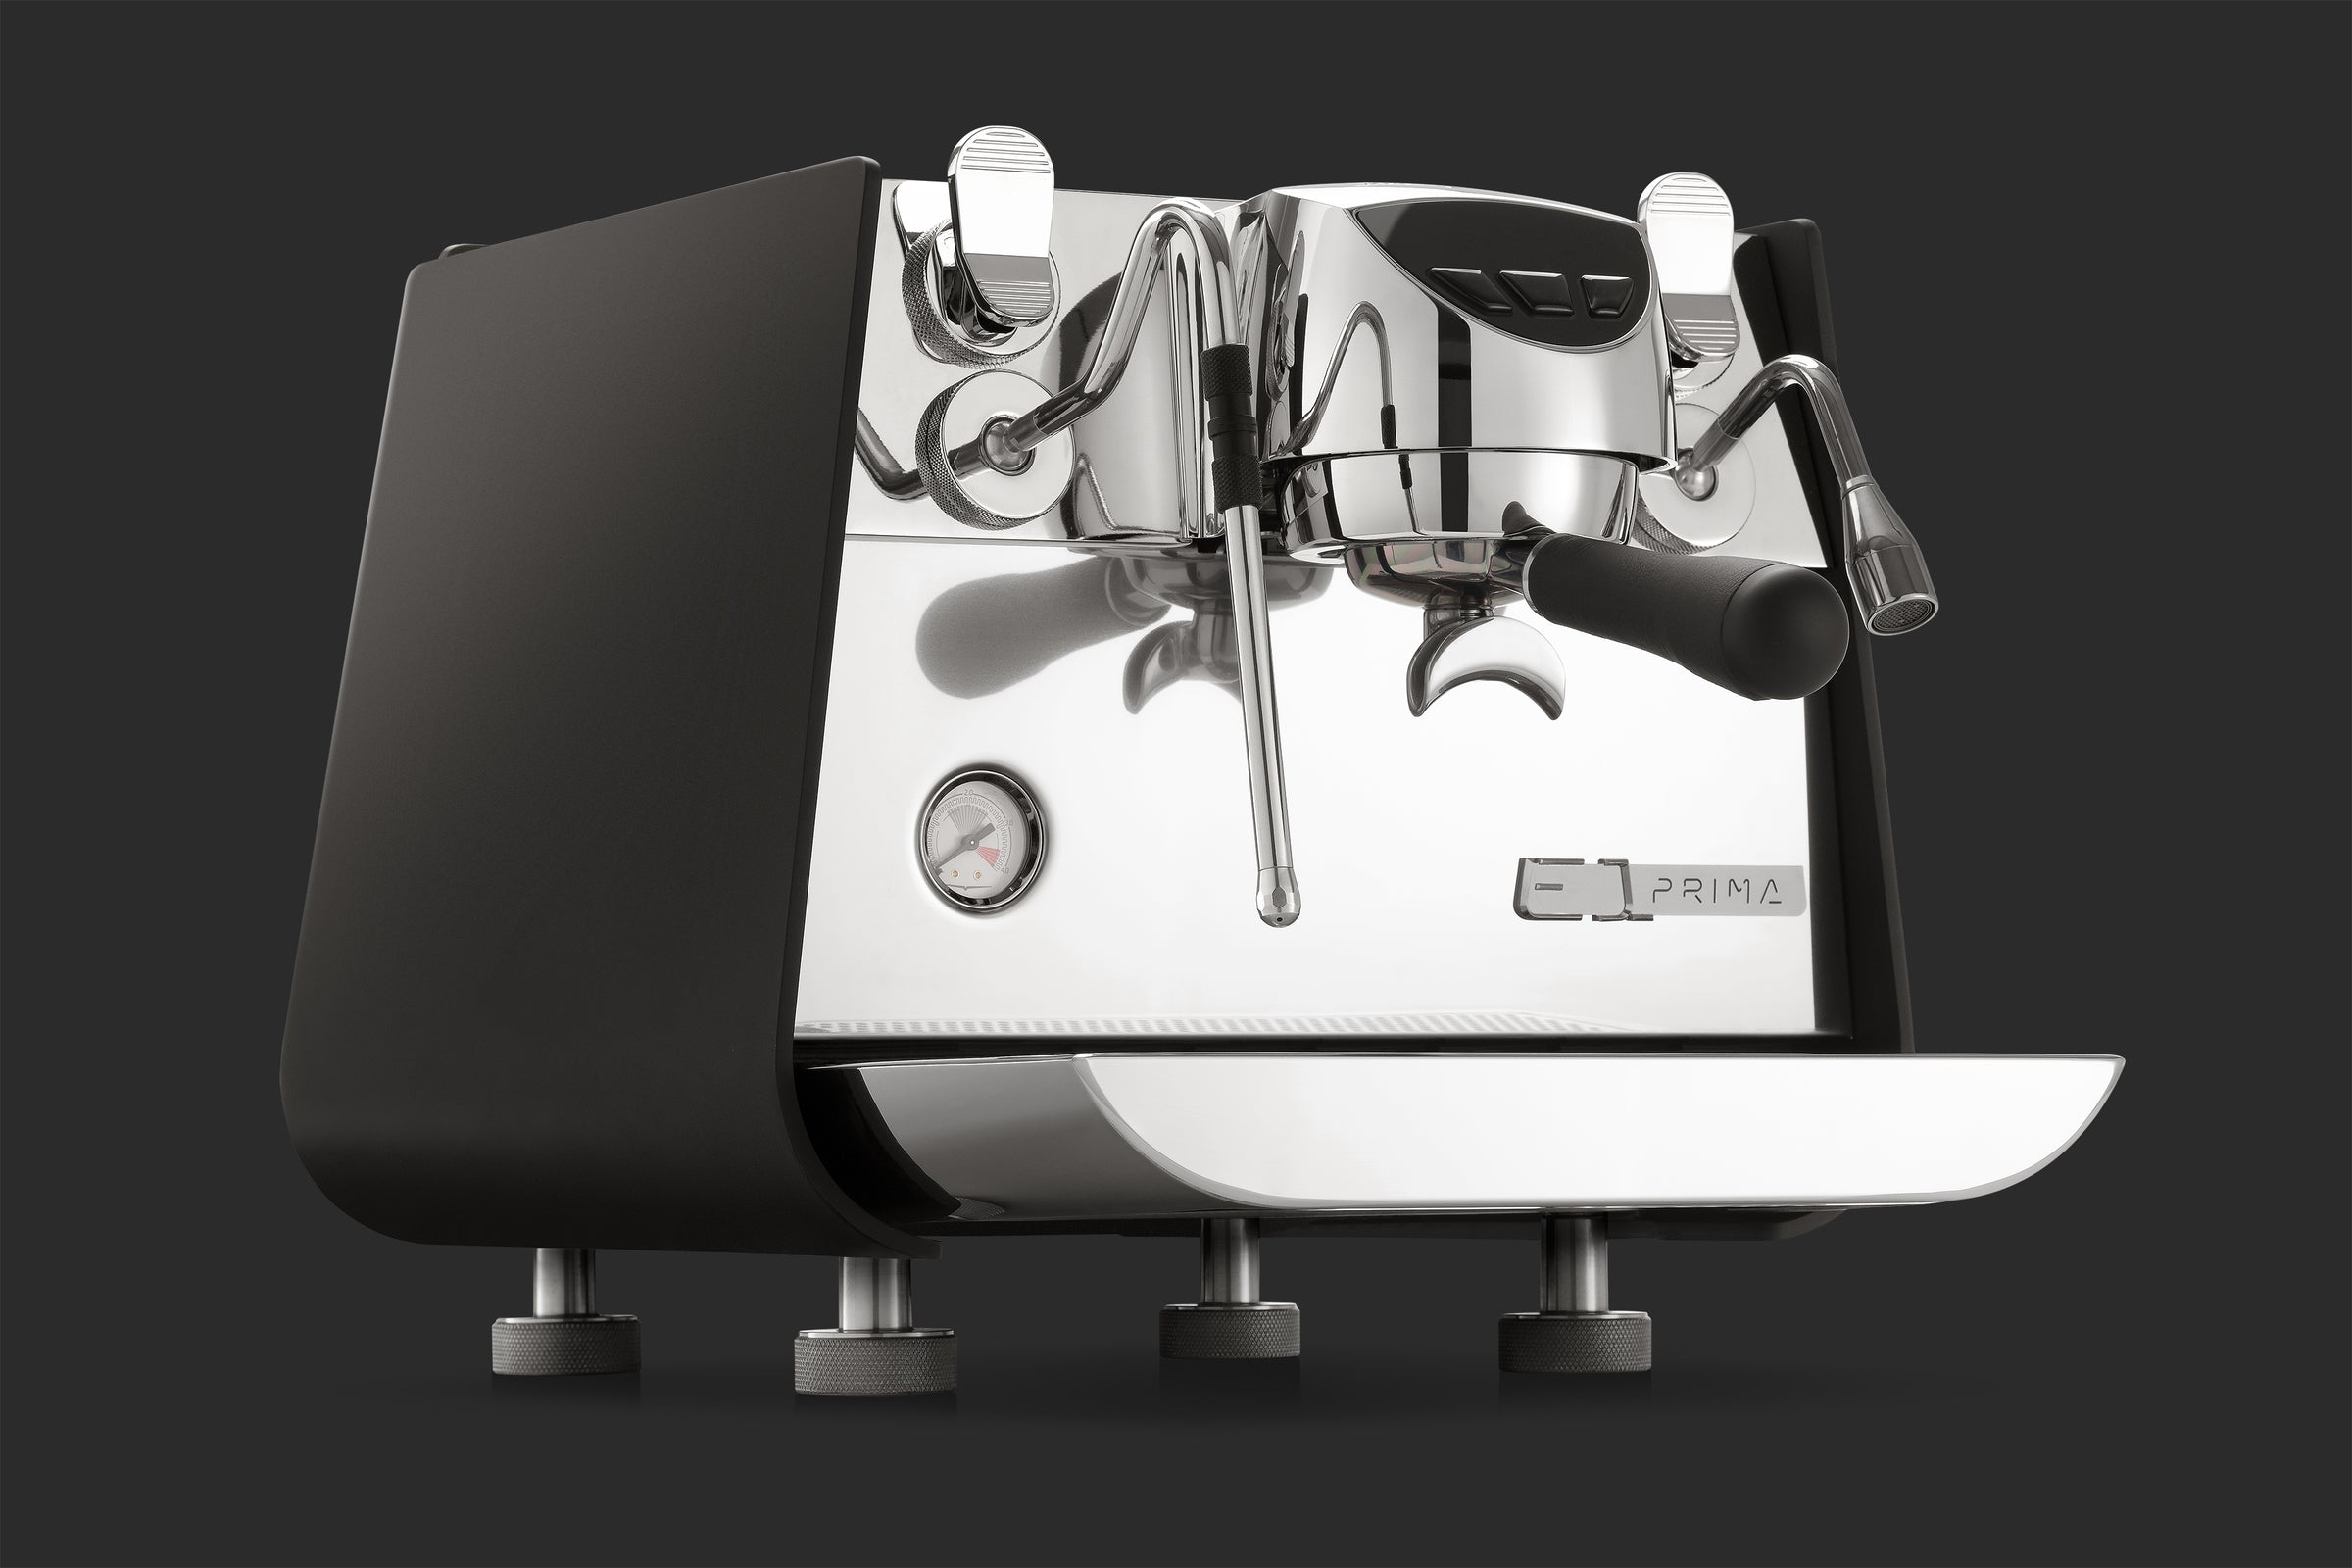 Advanced Espresso Machines